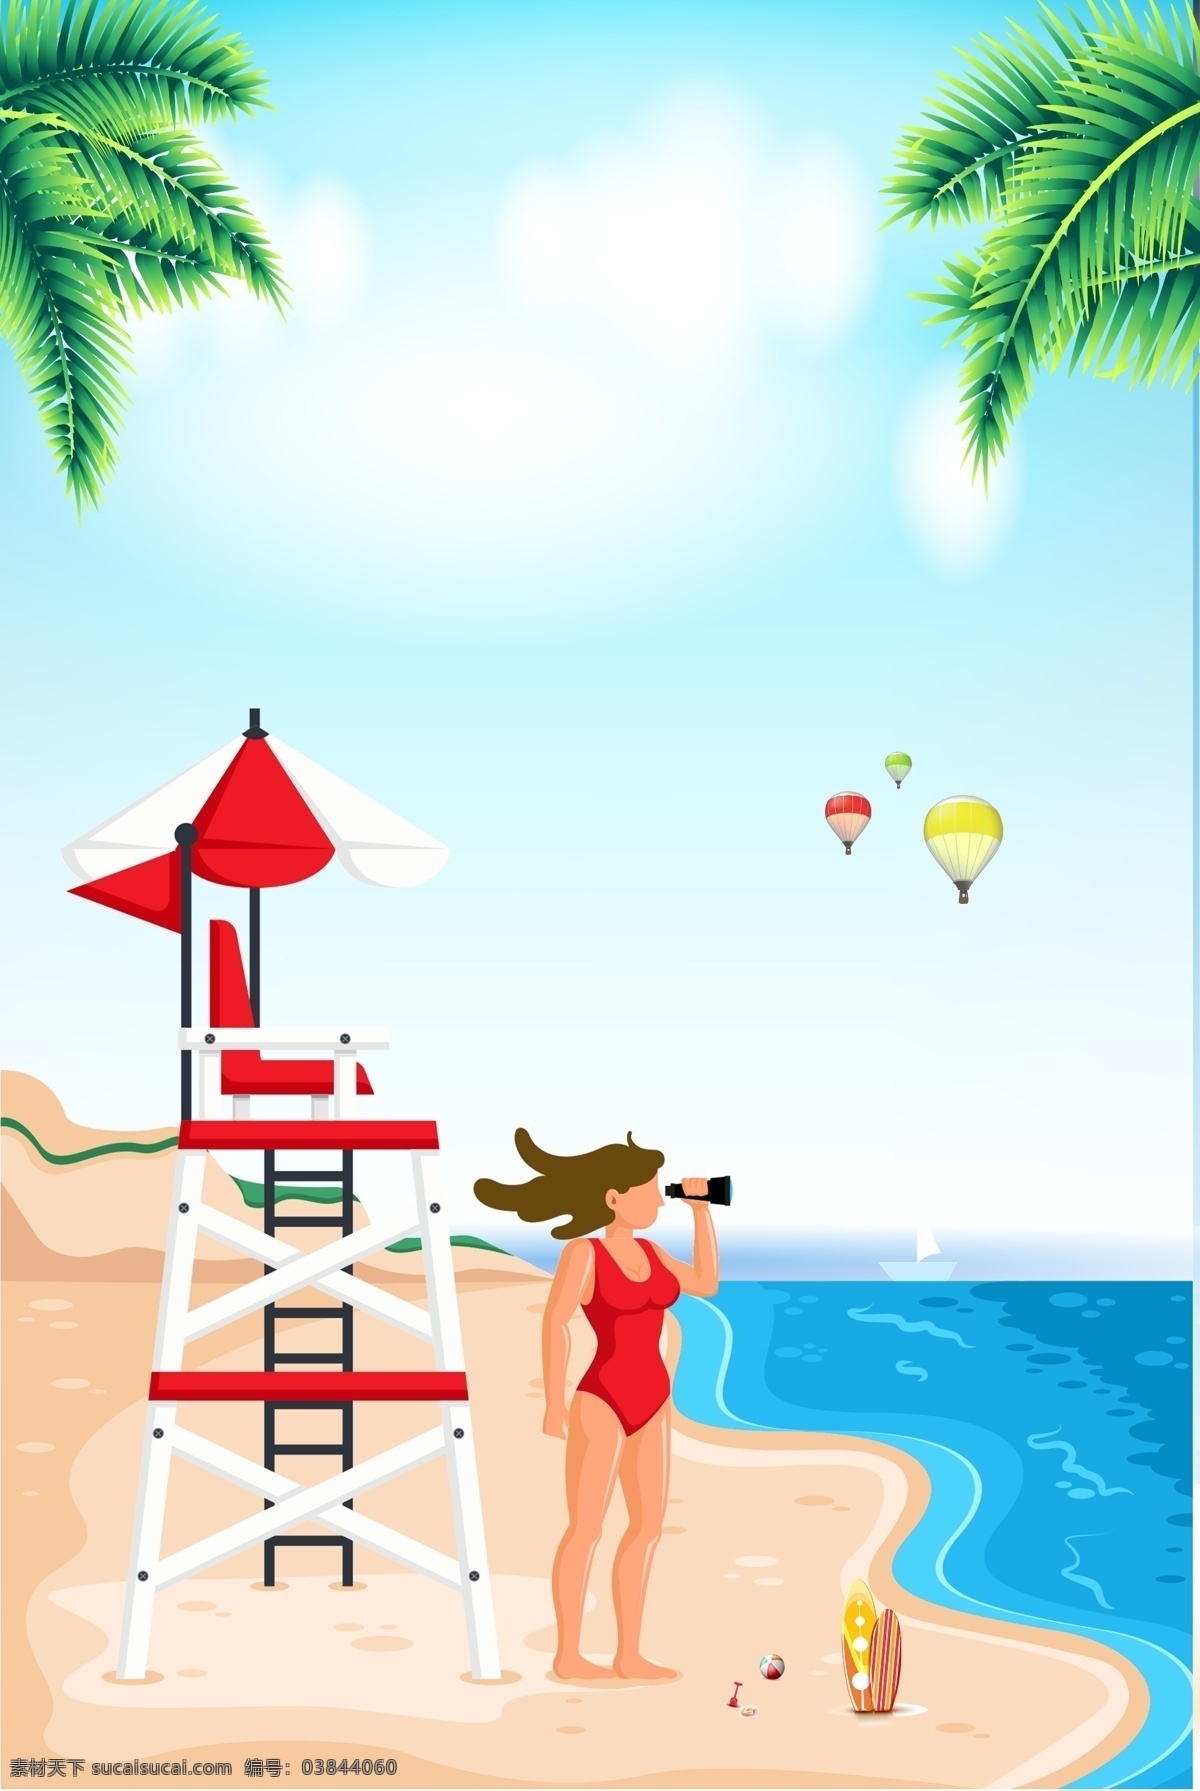 旅游出行 宣传海报 旅游 宣传 促销 打折 出行 出游 旅行 游玩 沙滩 热气球 椰子树